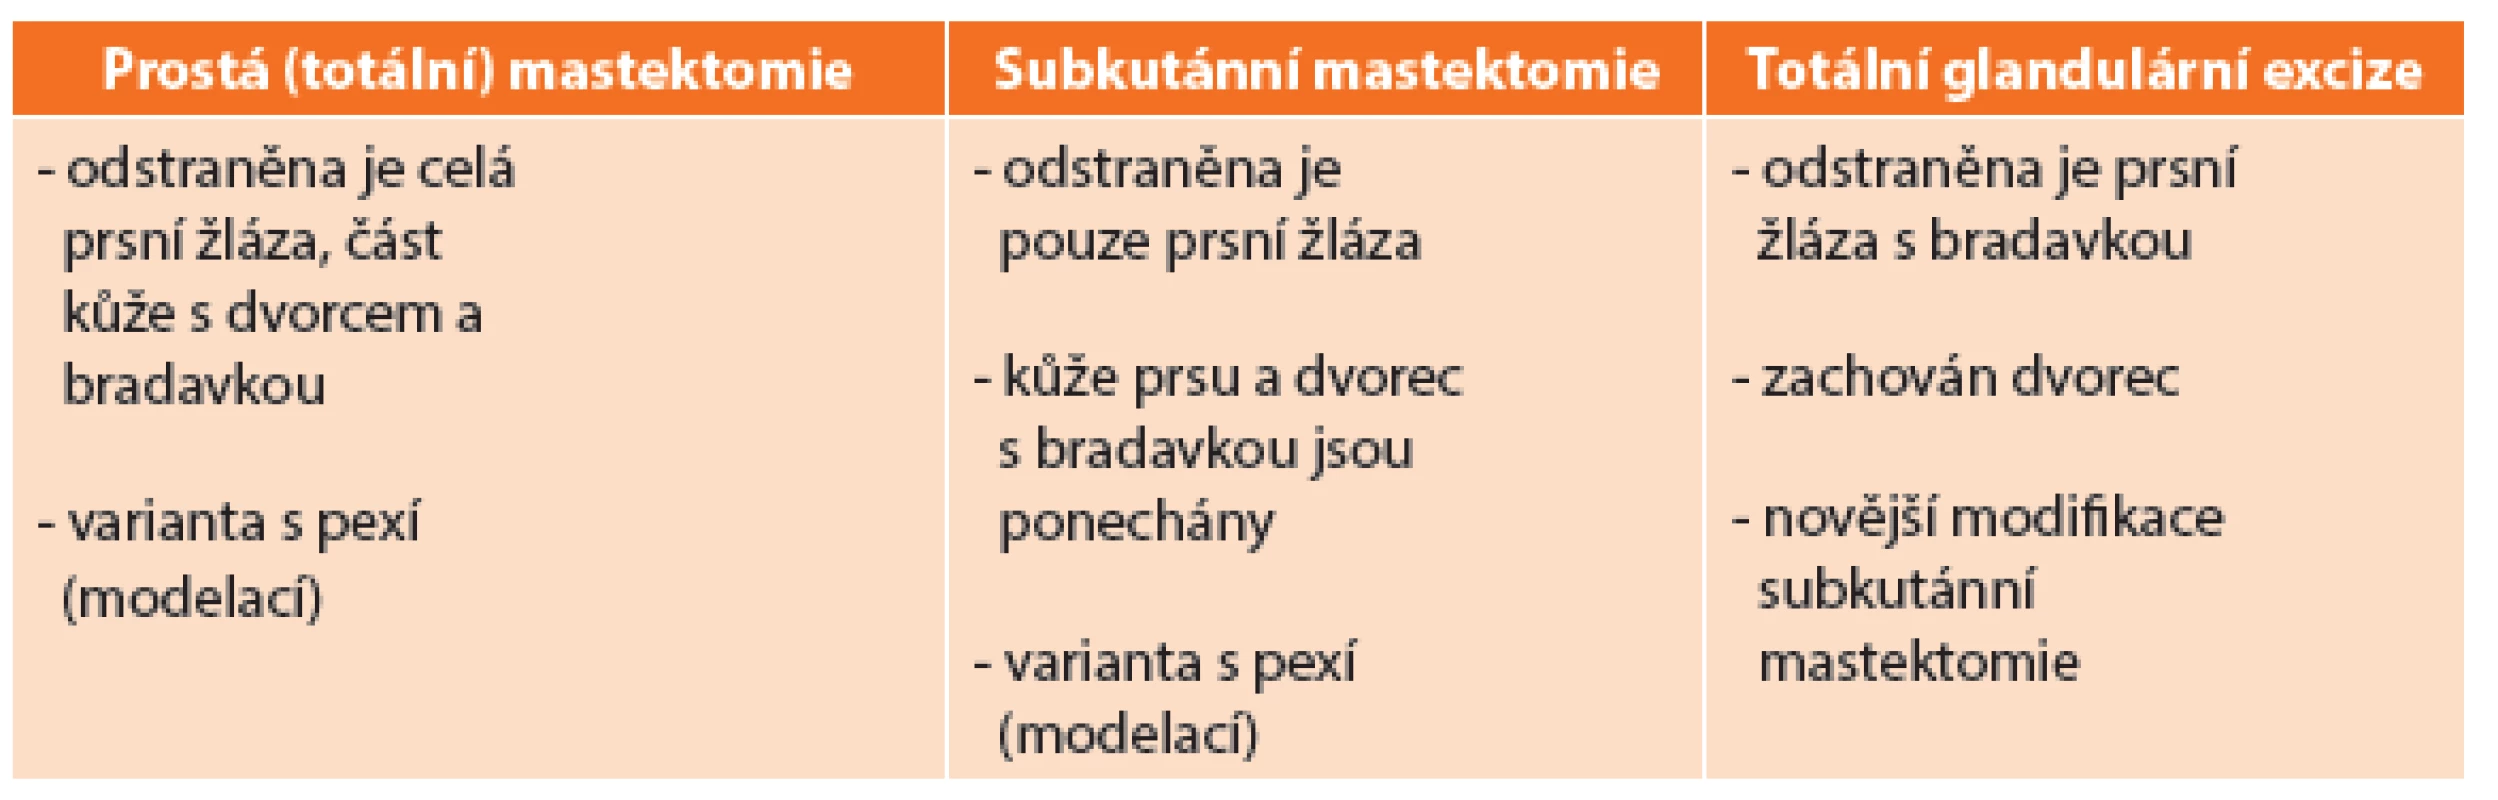 Typy profylaktické mastektomie
Tab. 1: Types of prophylactic mastectomy